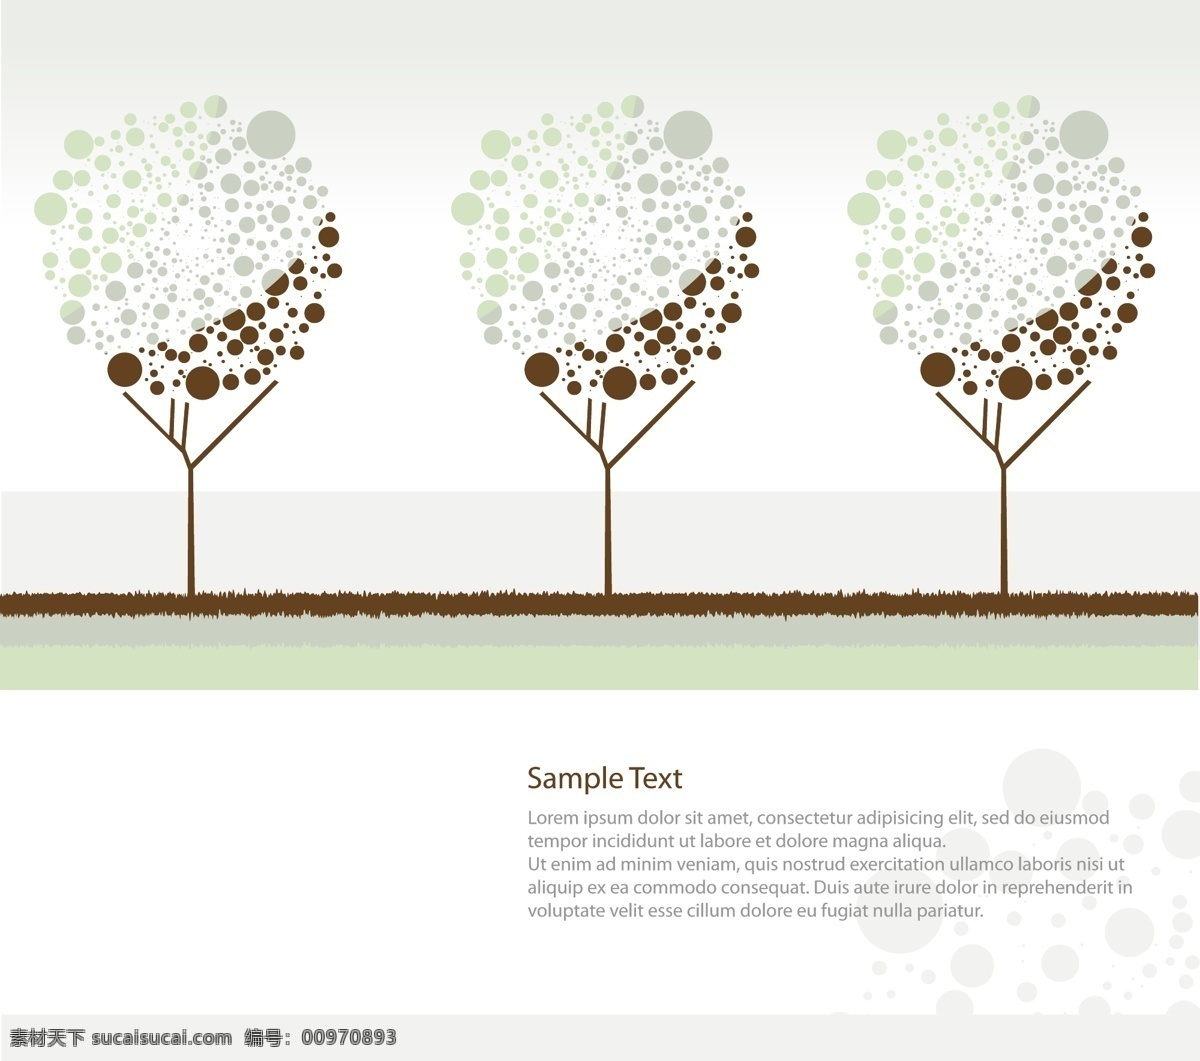 矢量 卡通 可爱 树木 封面设计 版式设计 卡通树木 矢量素材 英文版式 矢量图